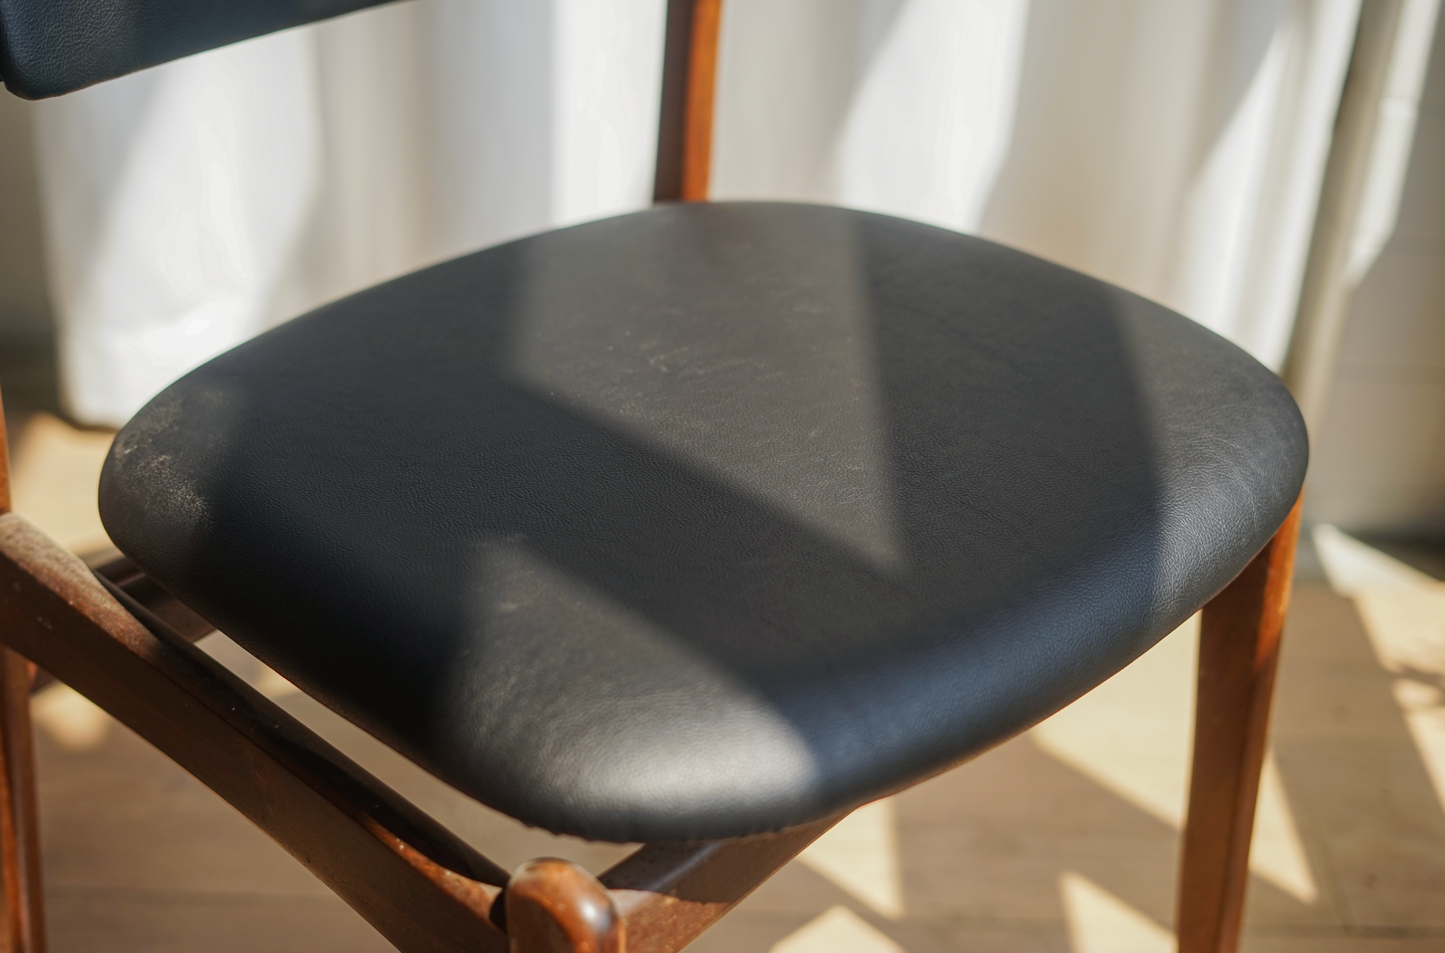 丹麥 Erik Buch 玫瑰木 黑色皮革 餐椅